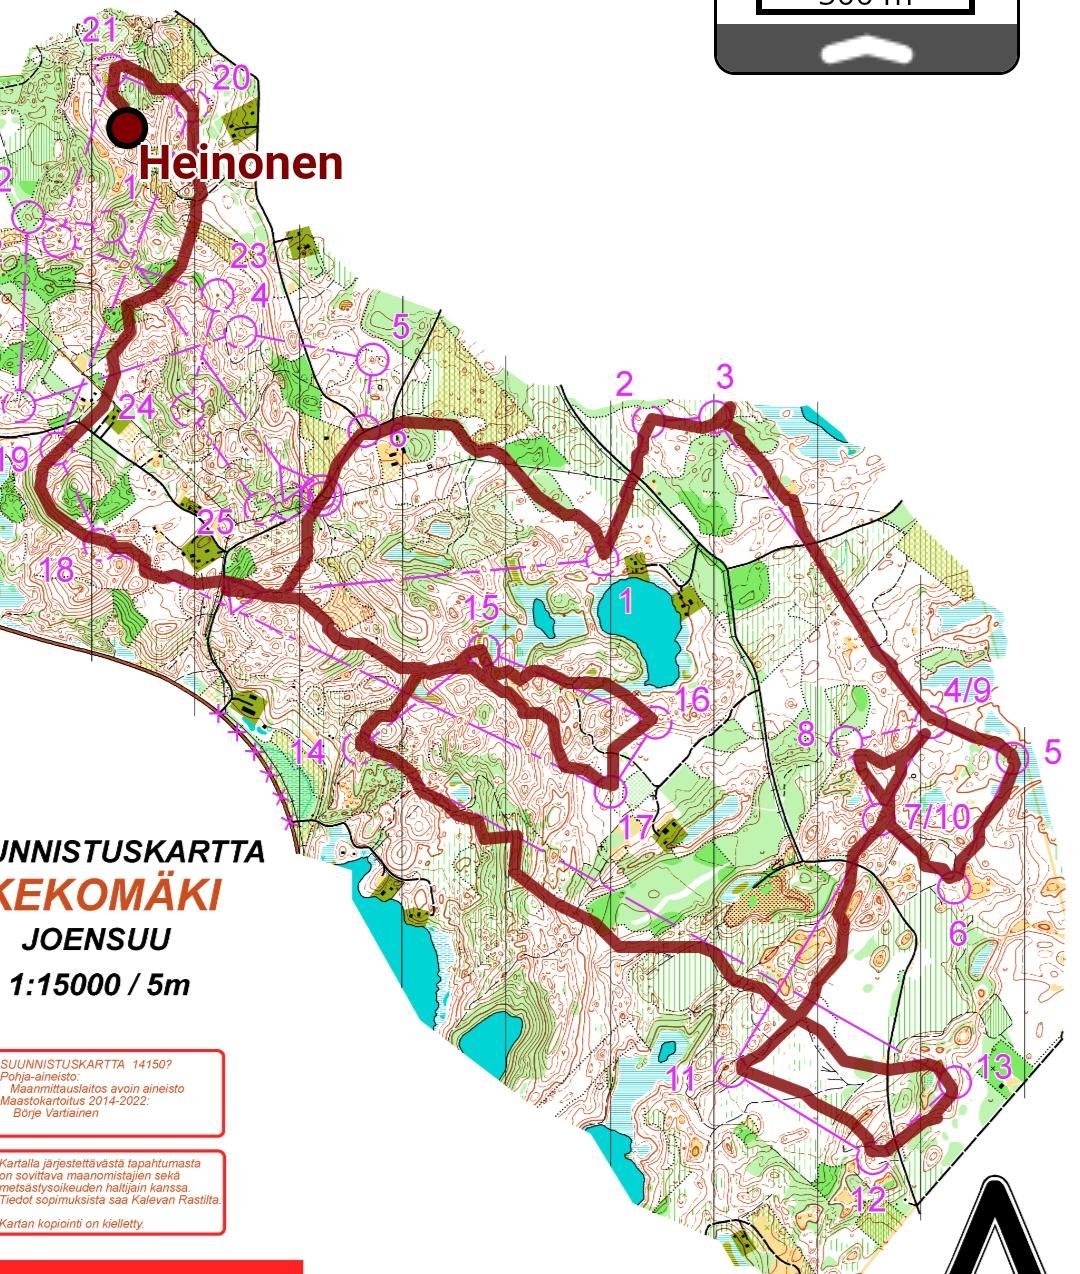 Kekomäki (24-06-2022)